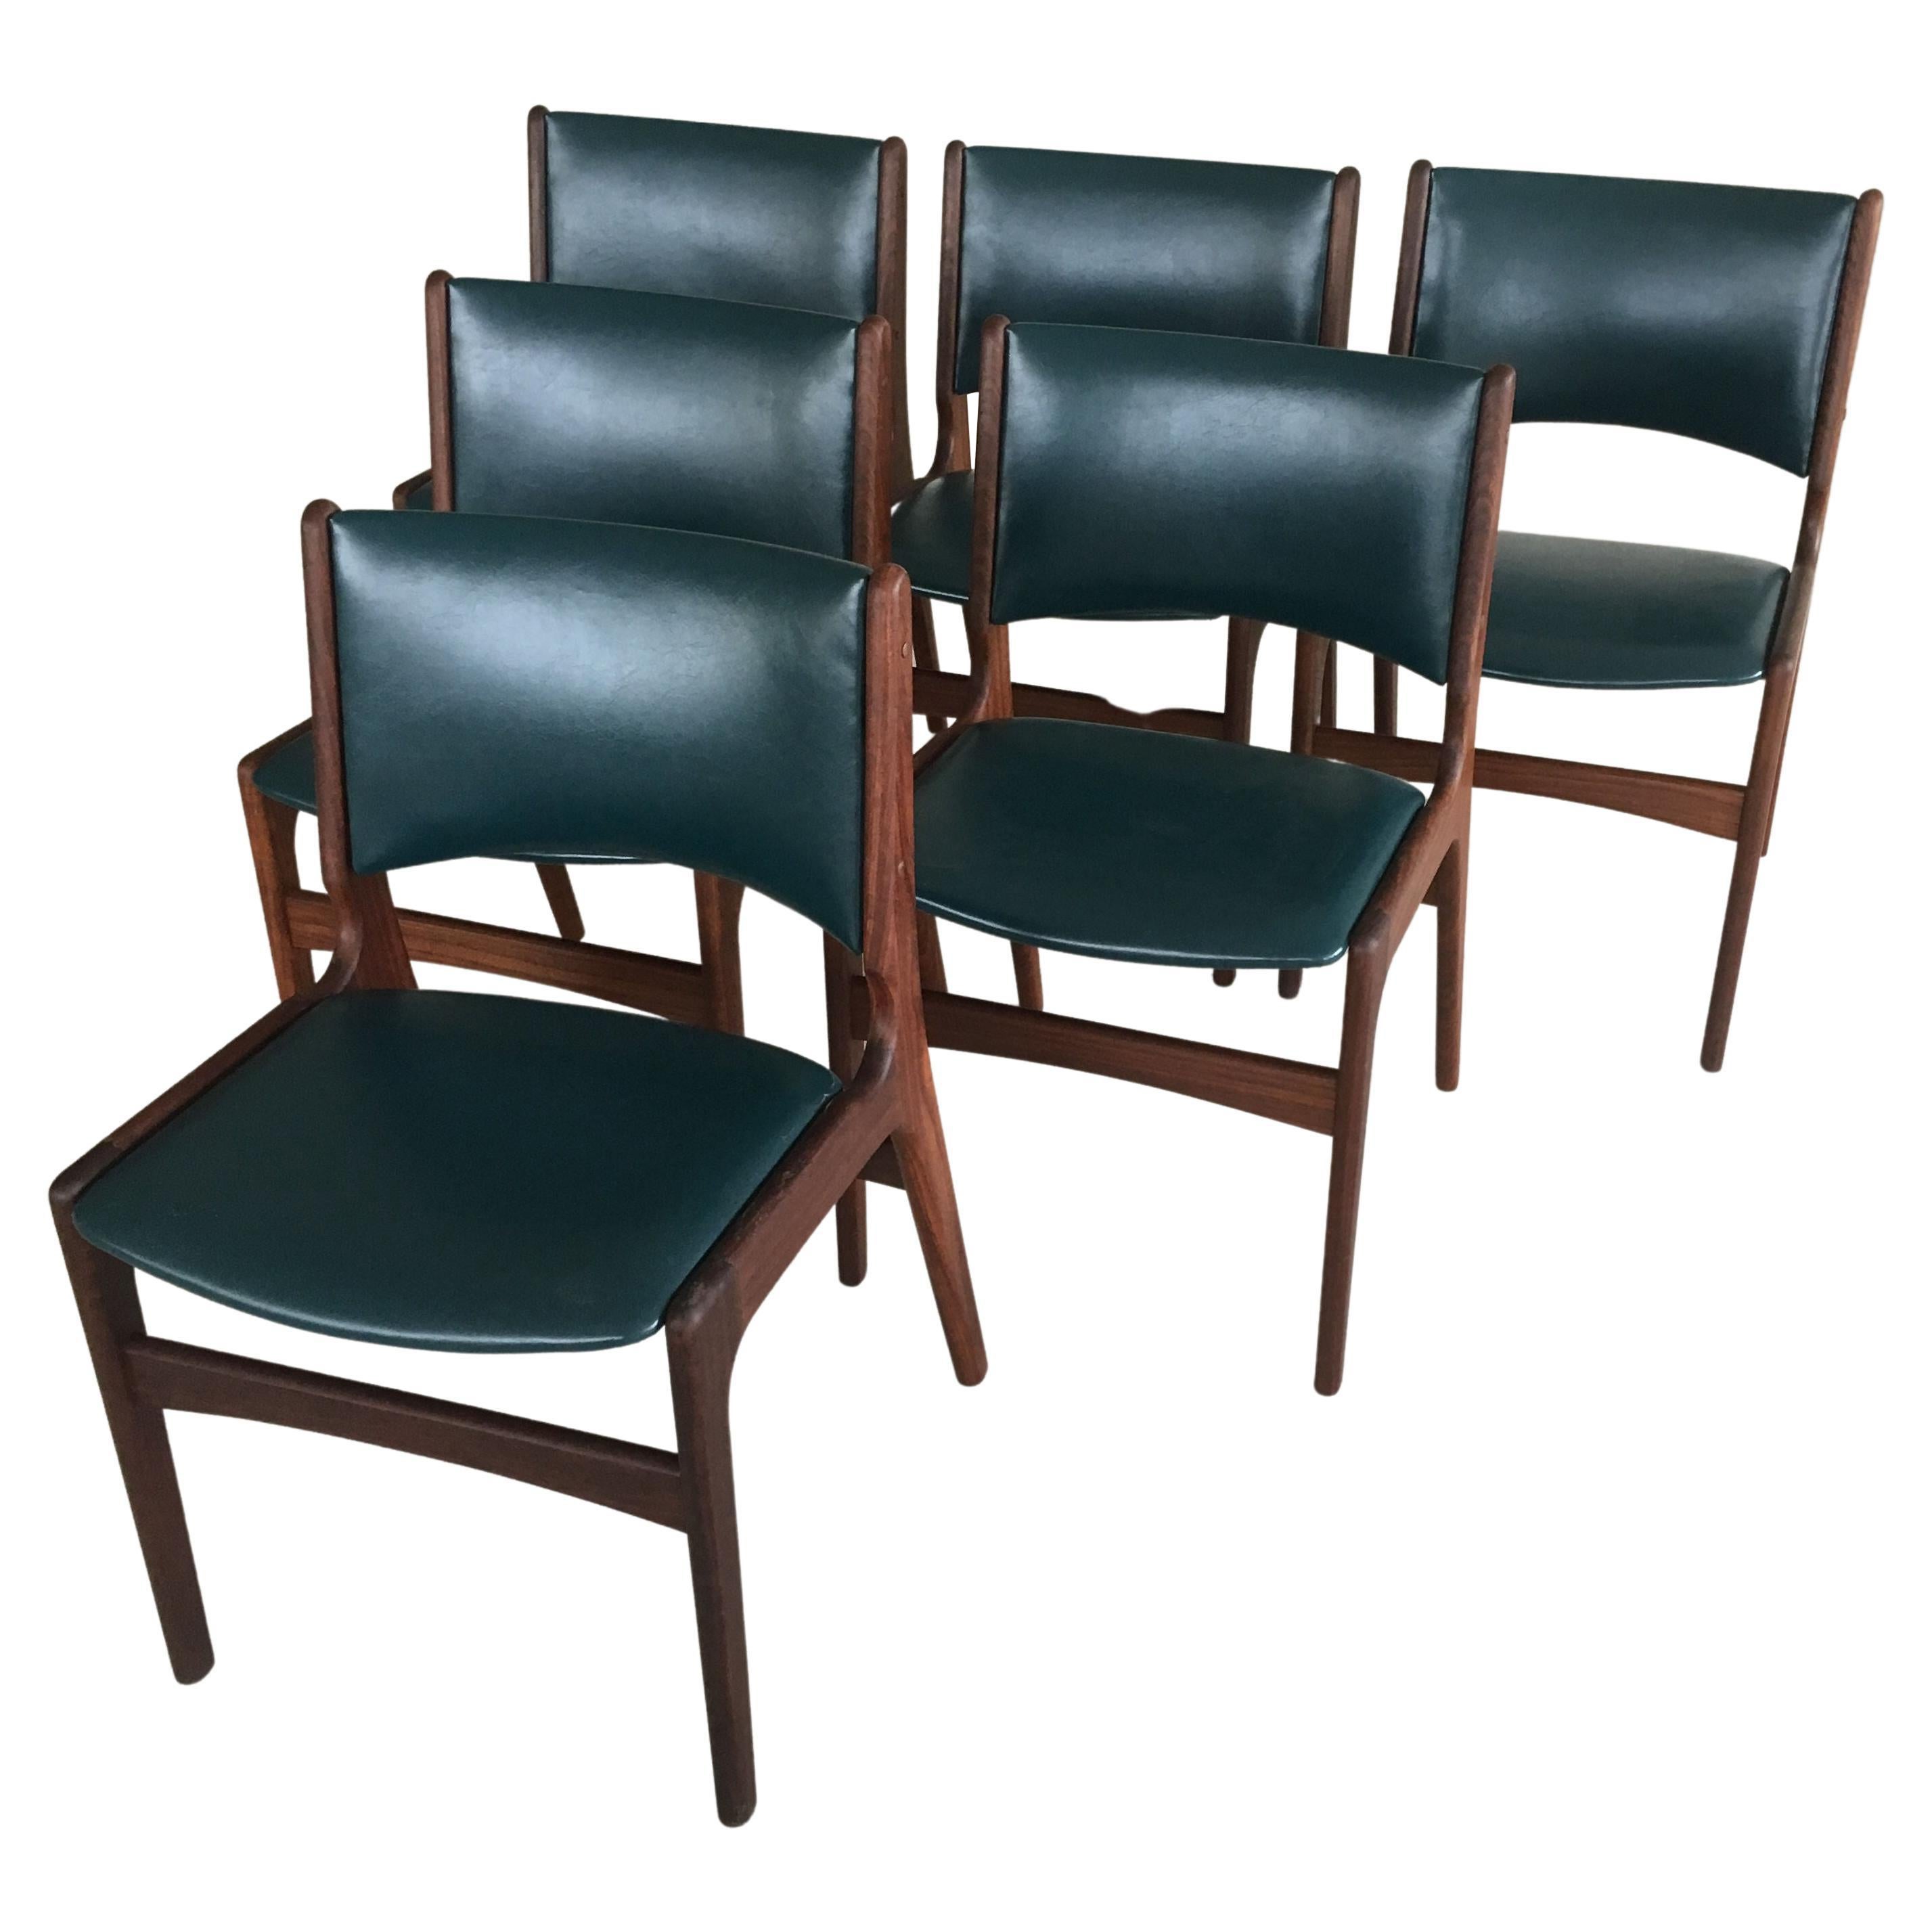 Ensemble de six chaises de salle à manger Erik Buch restaurées en teck massif, tapissées sur mesure